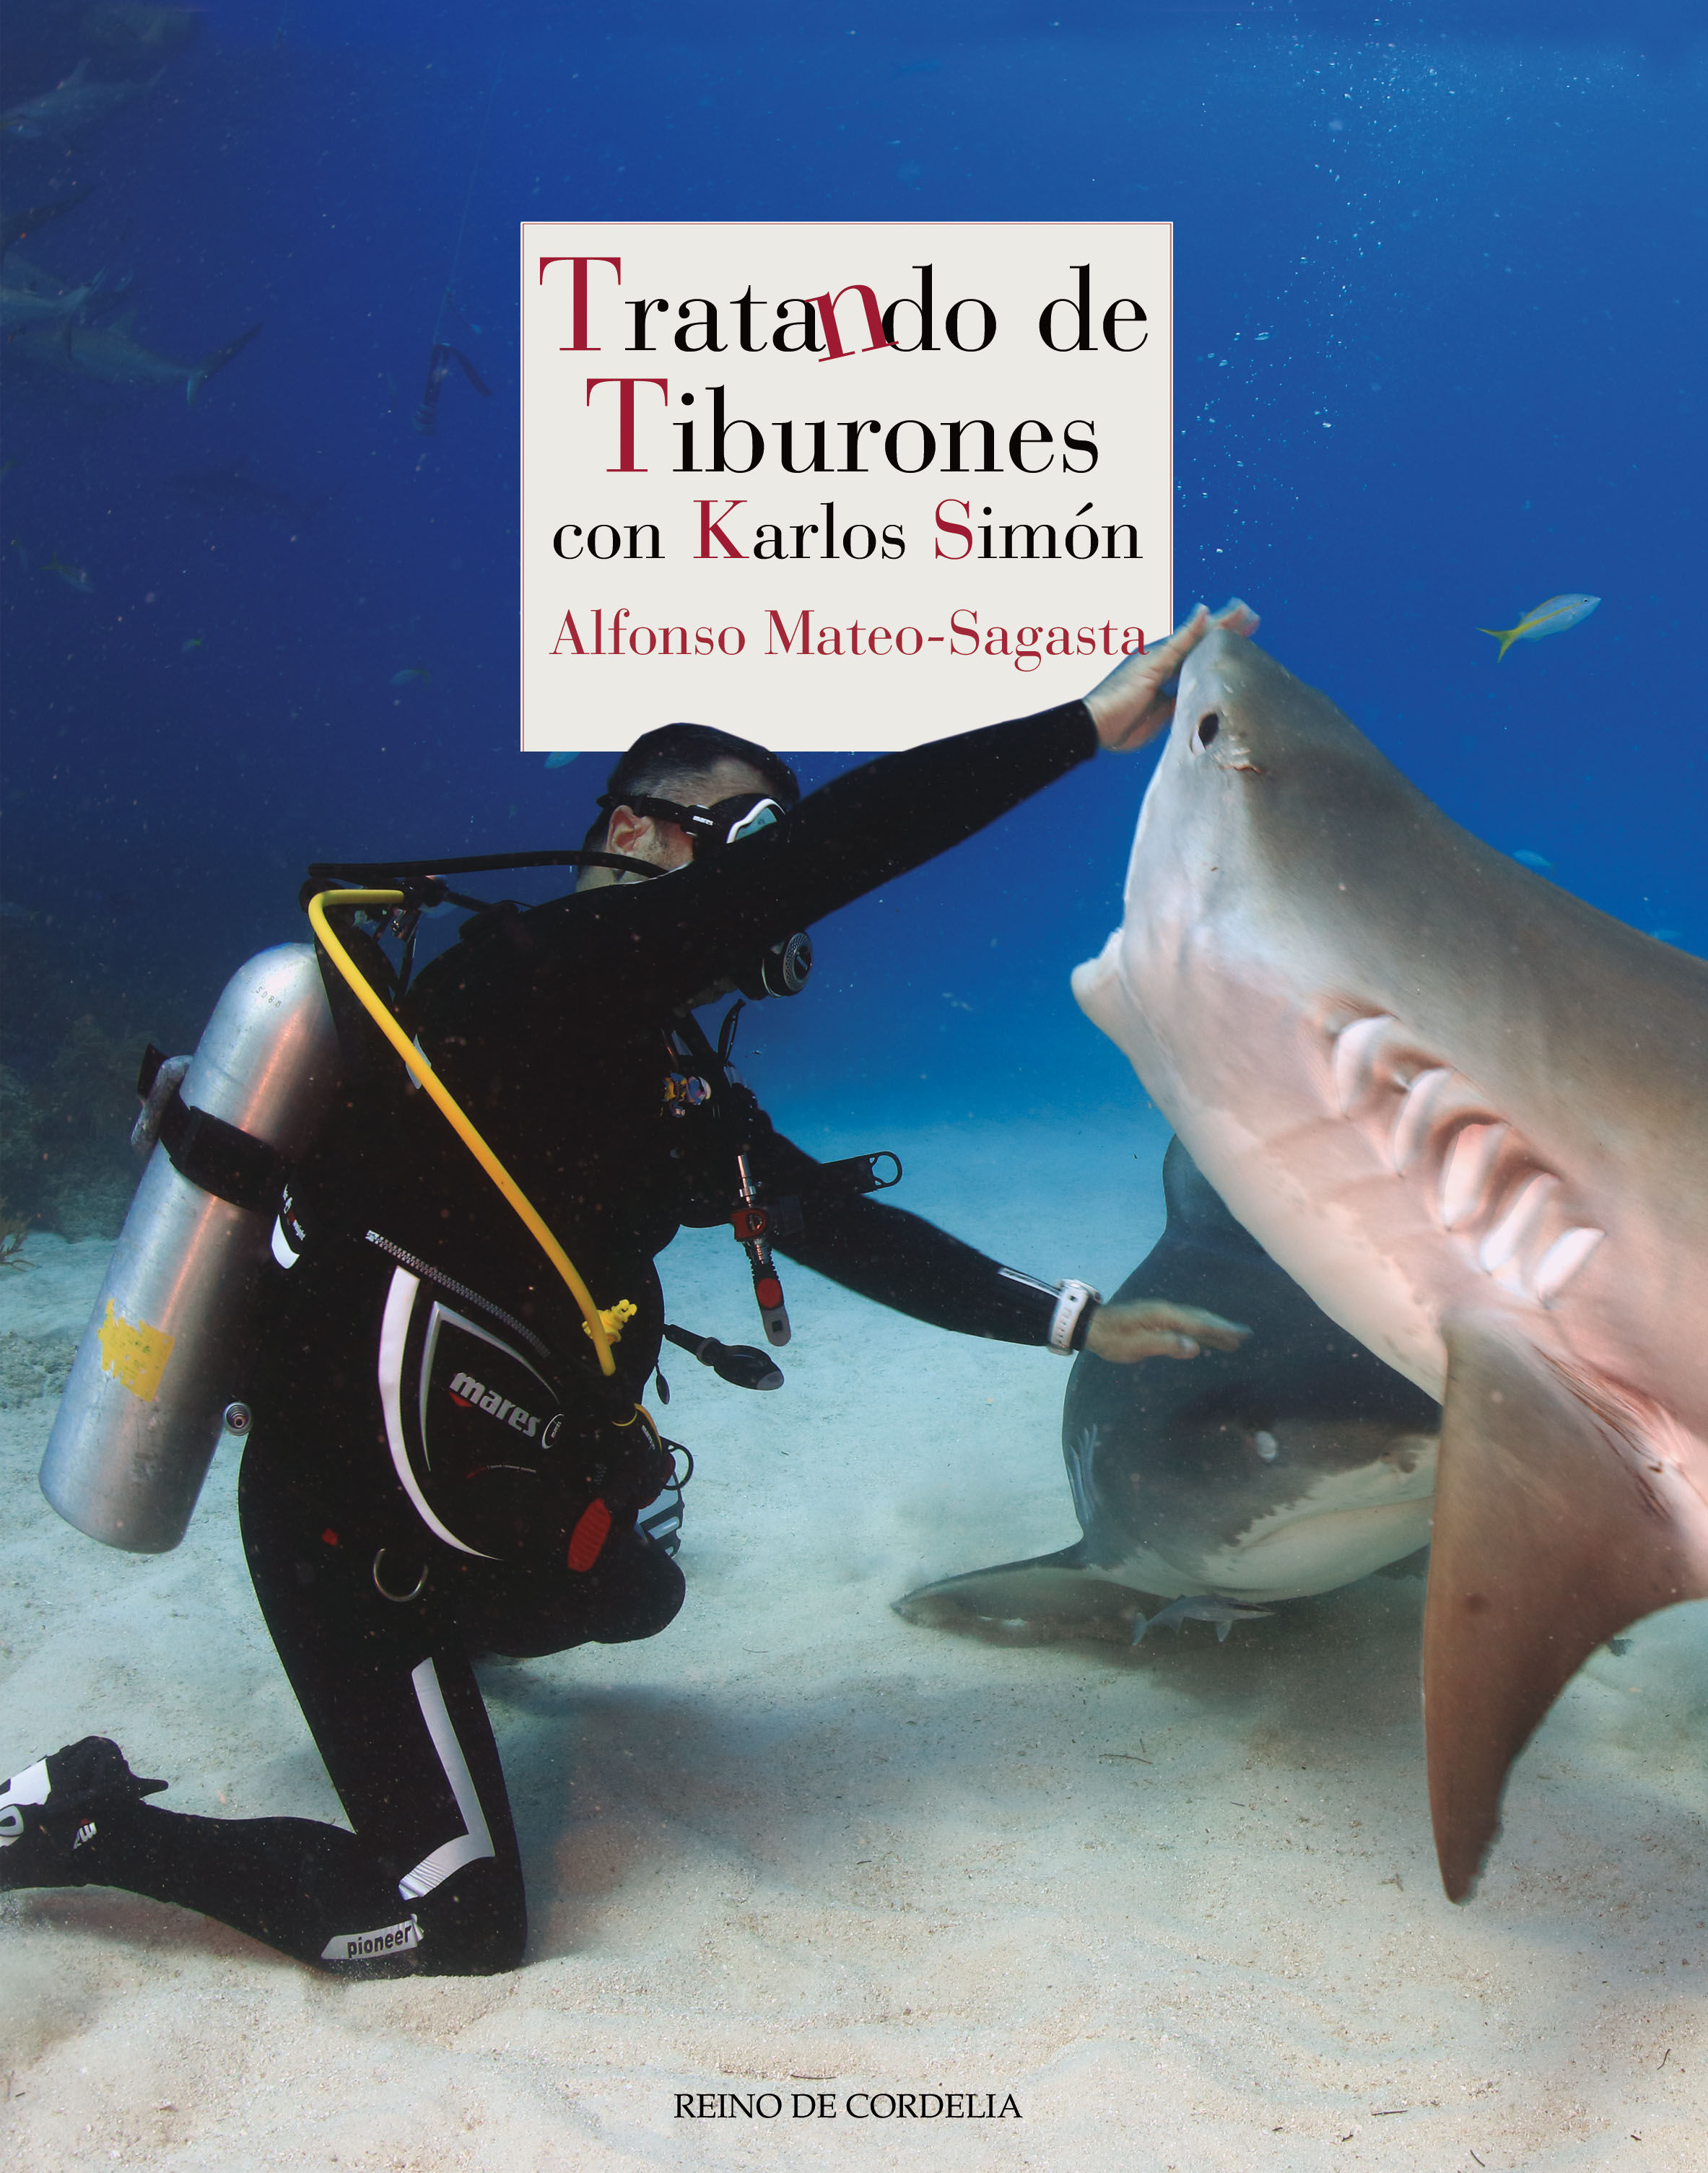 TRATANDO DE TIBURONES. CON KARLOS SIMÓN